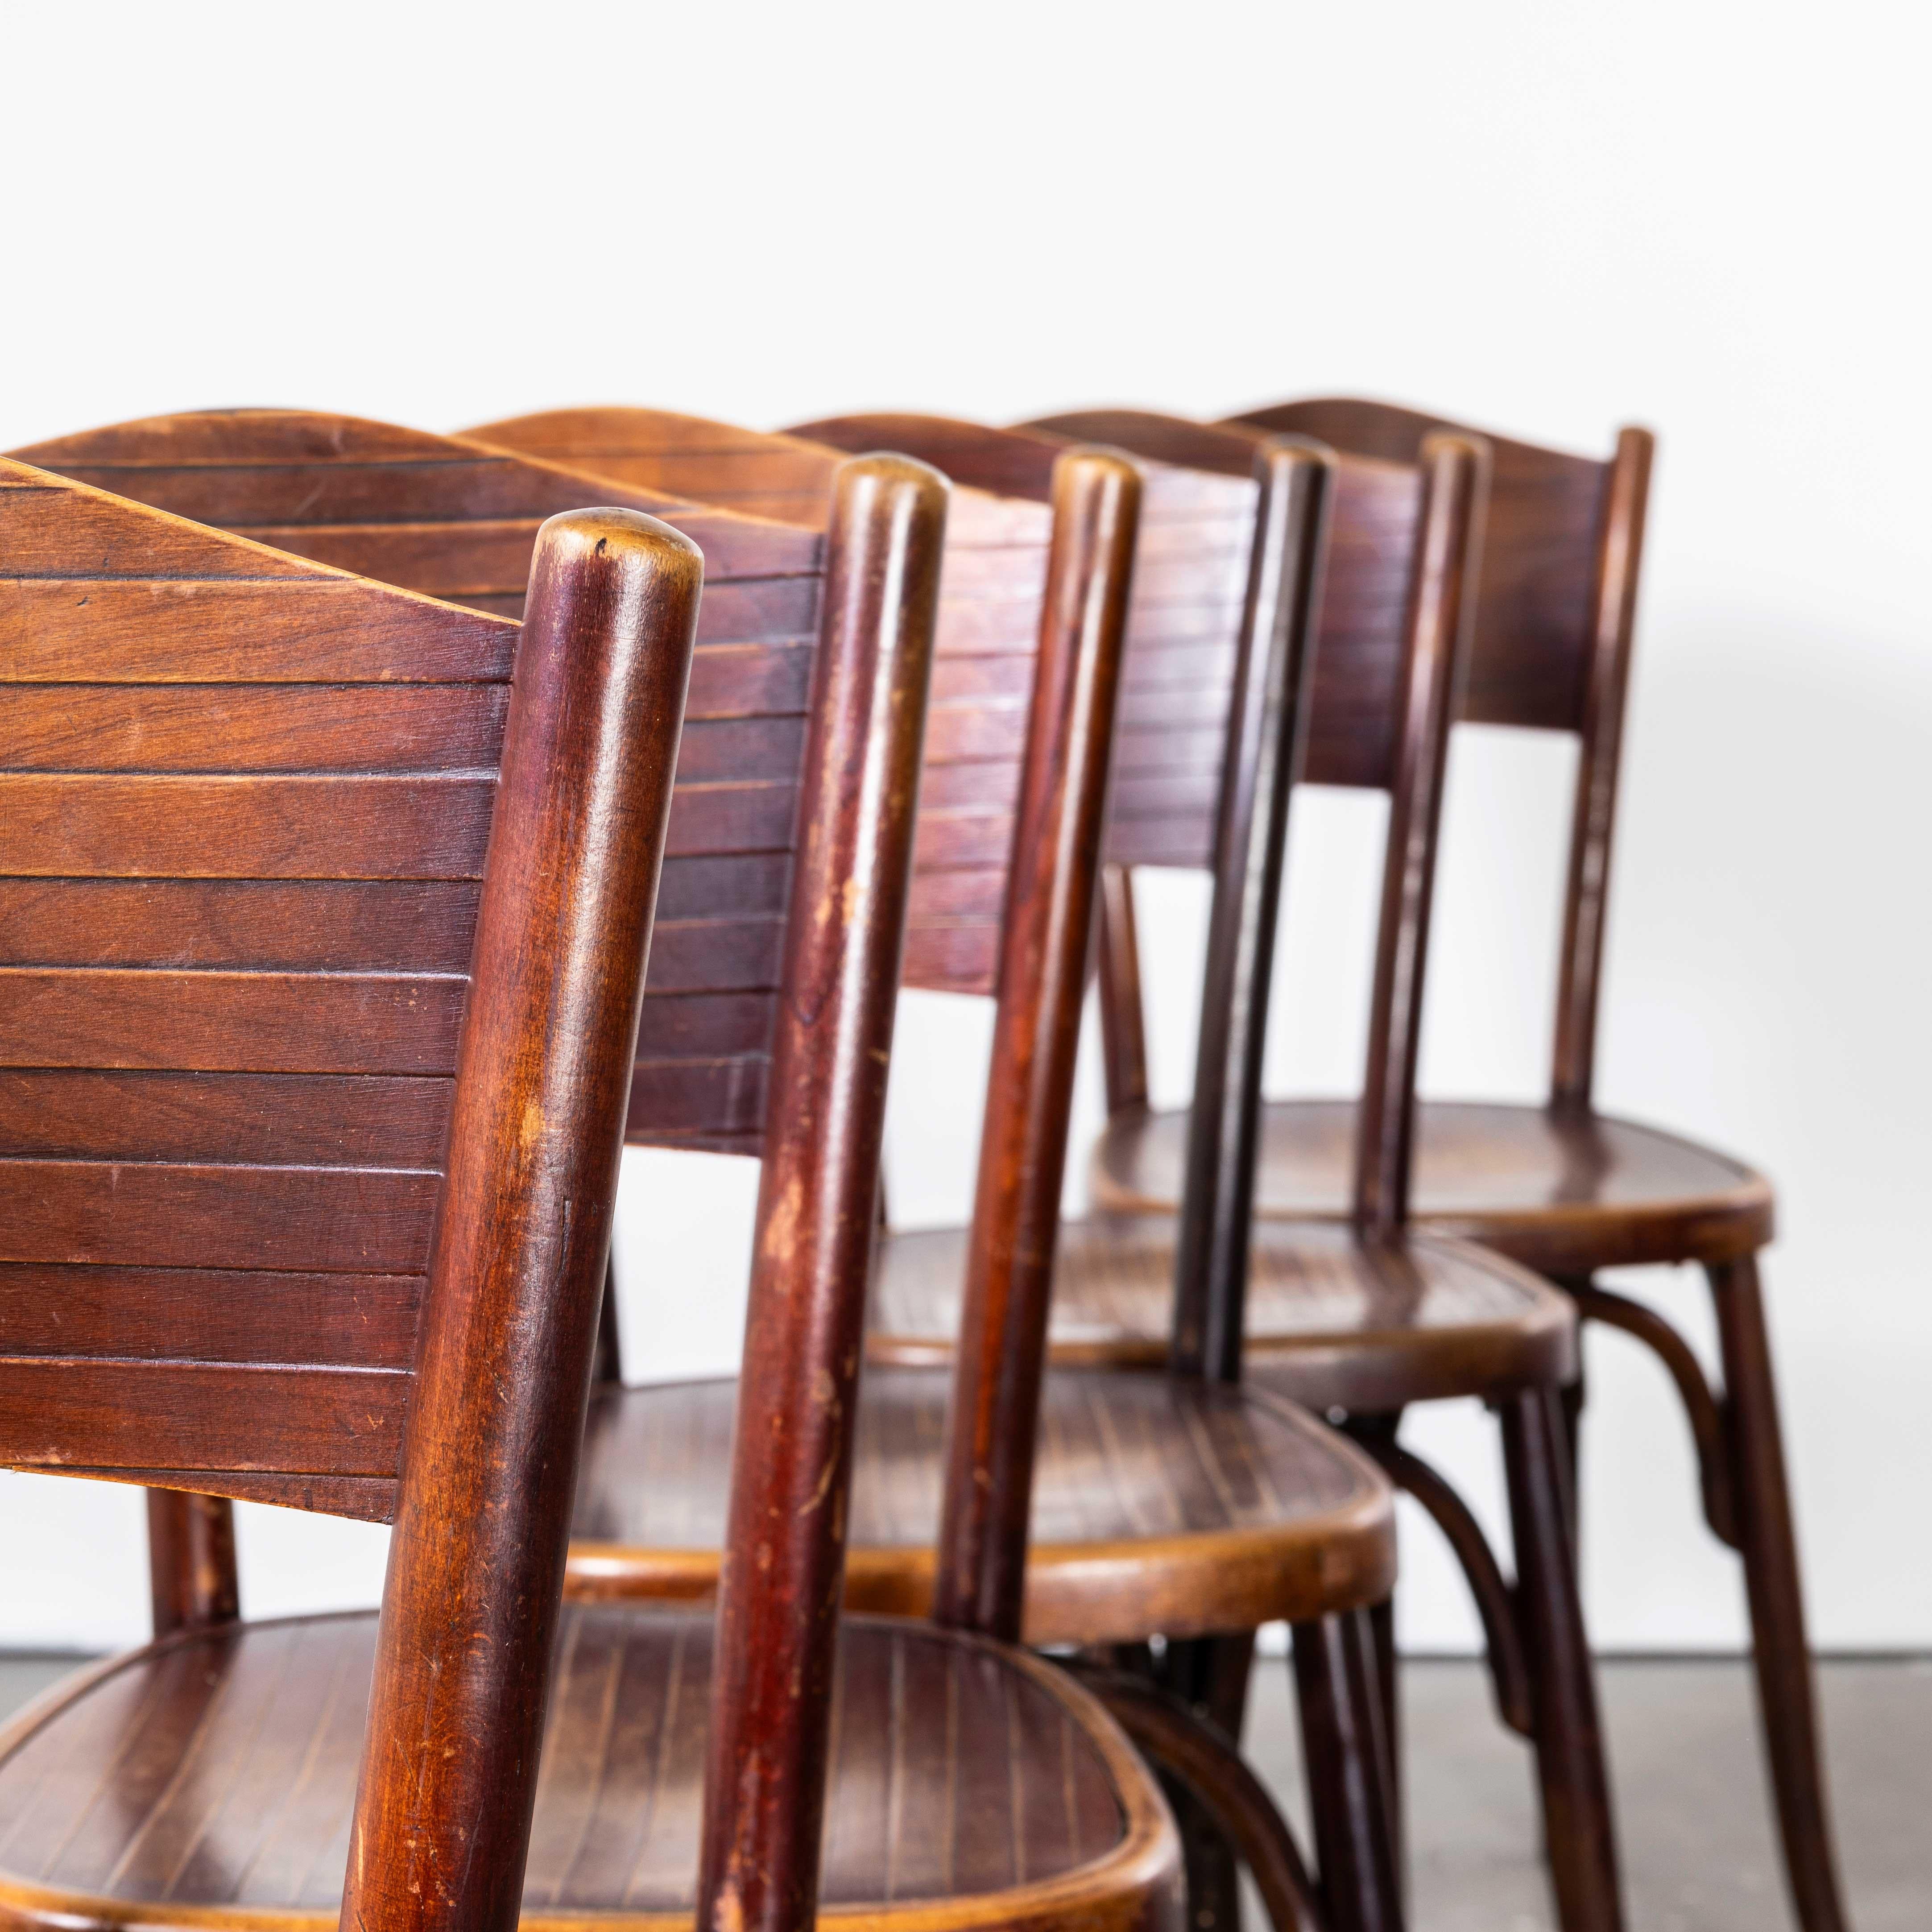 1940's Fischel Stamped Bentwood Dining Chairs - Gute Menge verfügbar
1940's Fischel Stamped Bentwood Dining Chairs - Gute Menge verfügbar. Das Verfahren zum Biegen von Buchenholz mit Dampf zu eleganten Stühlen wurde von Thonet entdeckt und